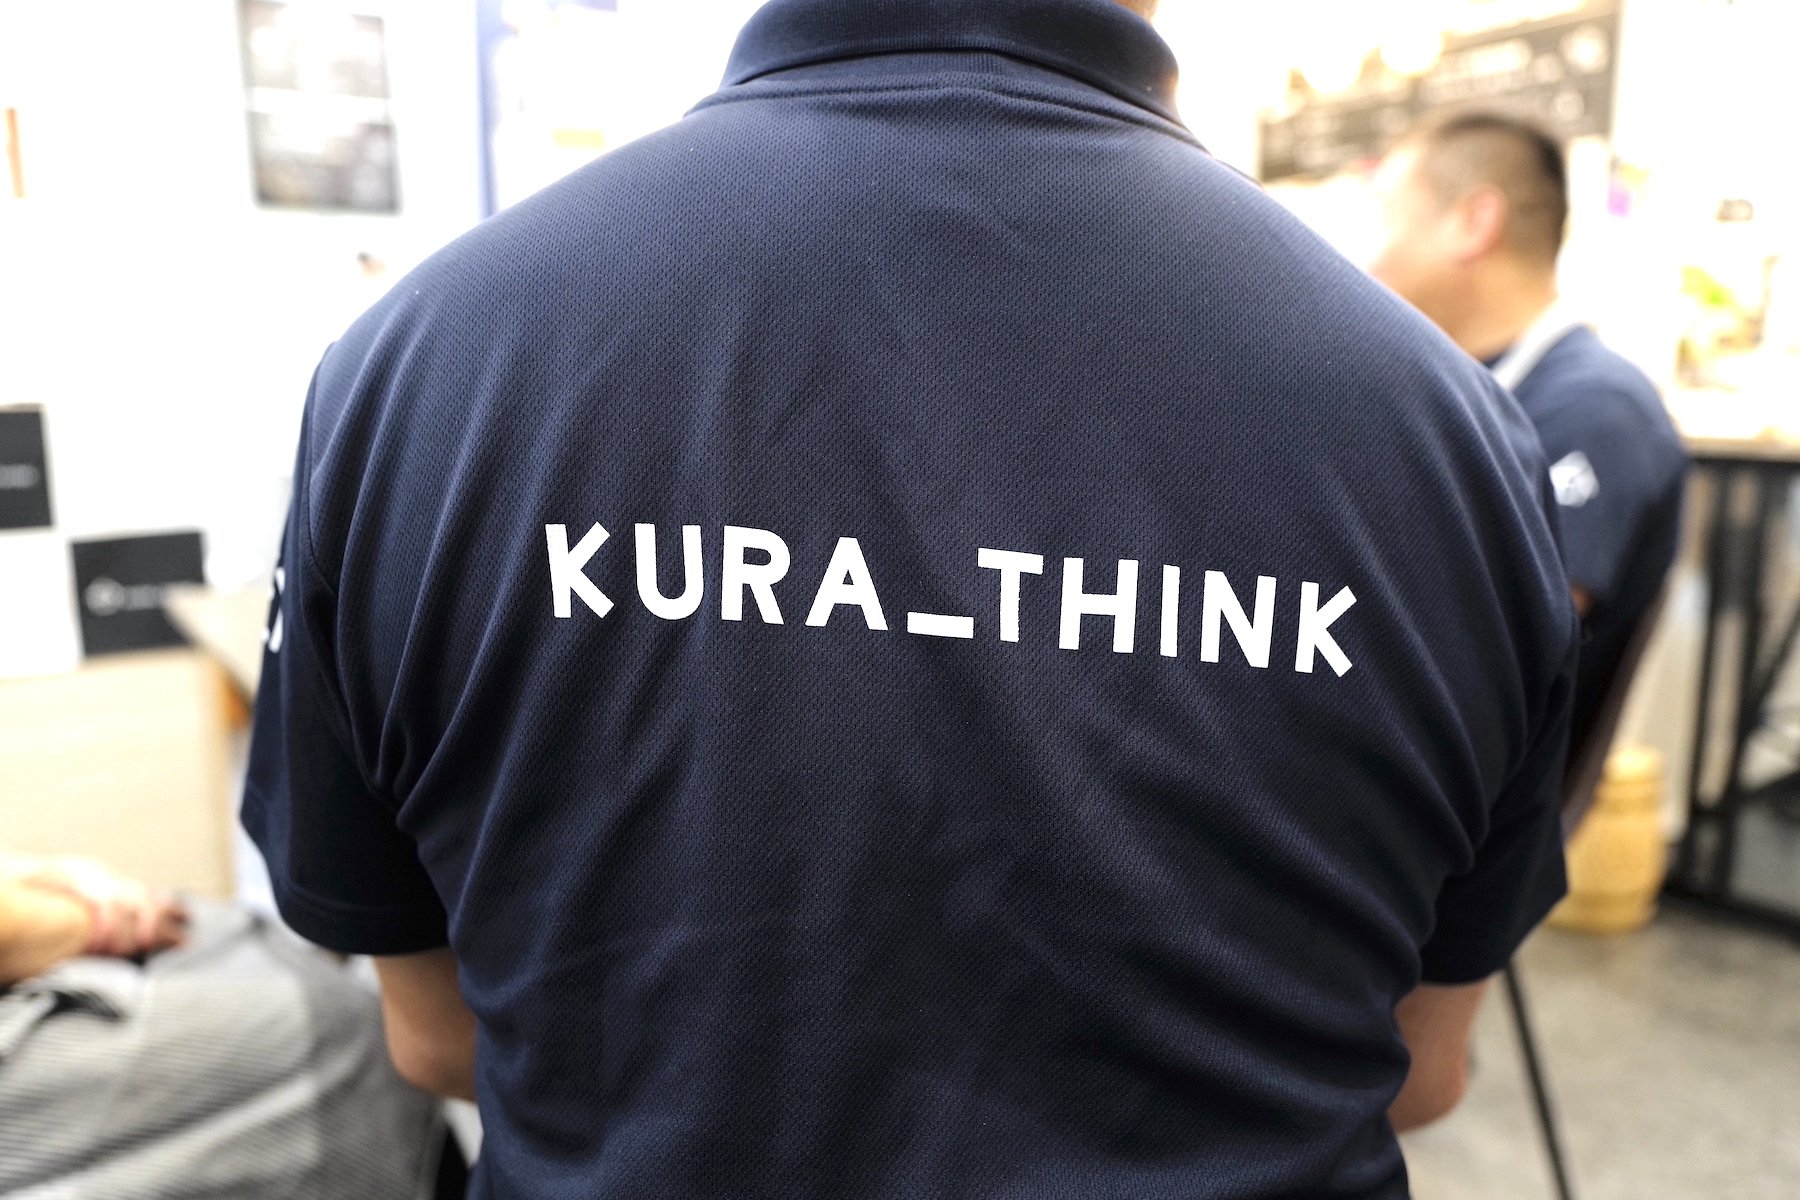 星合和広さんの背中にはKURA_THINKの大きなロゴが。 | Make New Magazine「未来の定番」をつくるために、パナソニックのリアルな姿を伝えるメディア